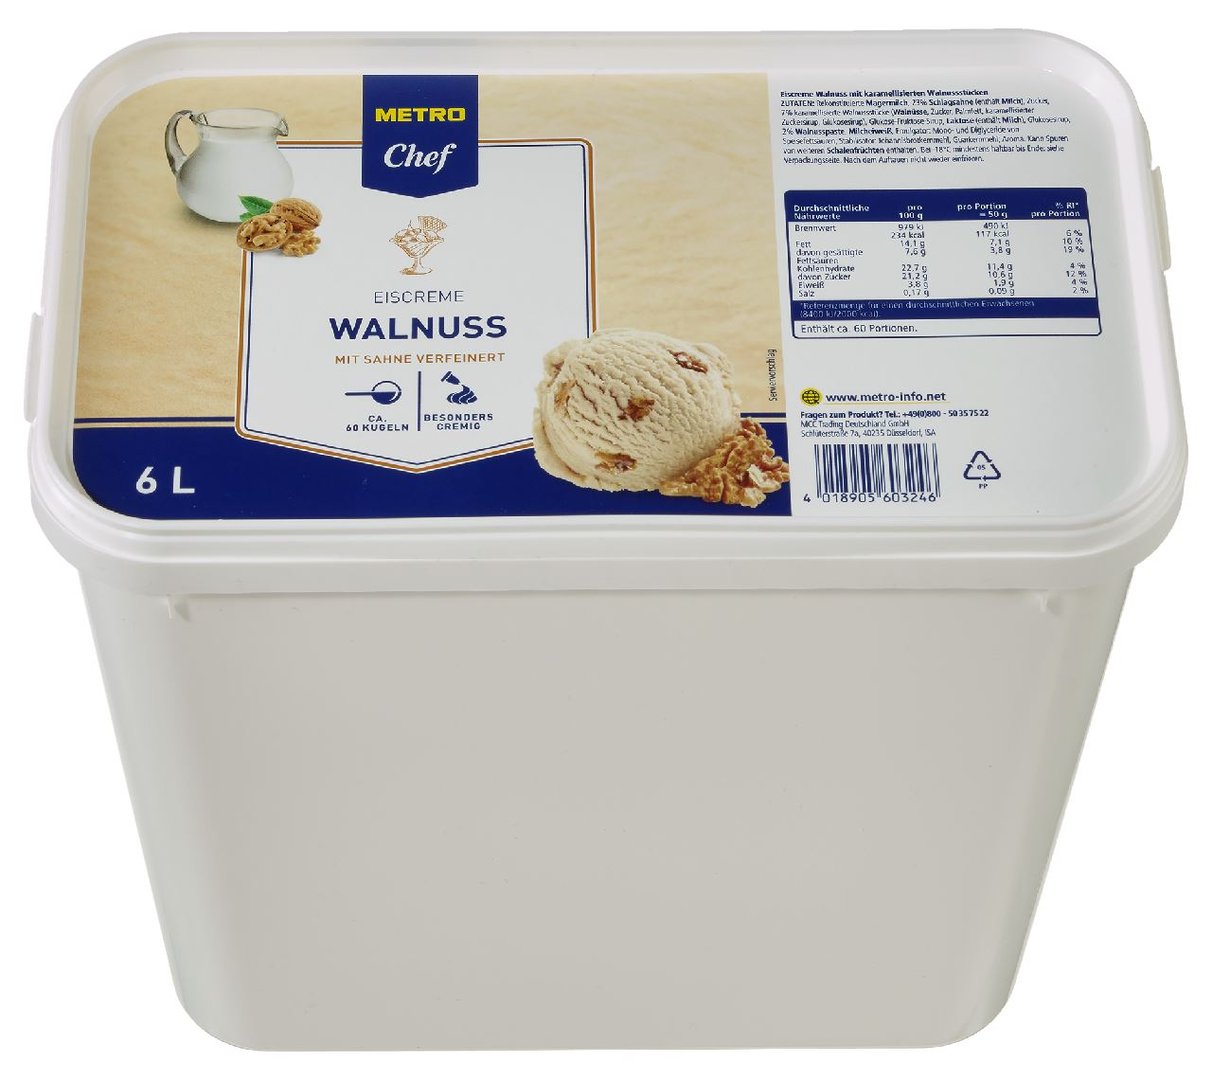 METRO Chef - Eiscreme Walnuss mit Sahne verfeinert, tiefgefroren - 6 l Kanne